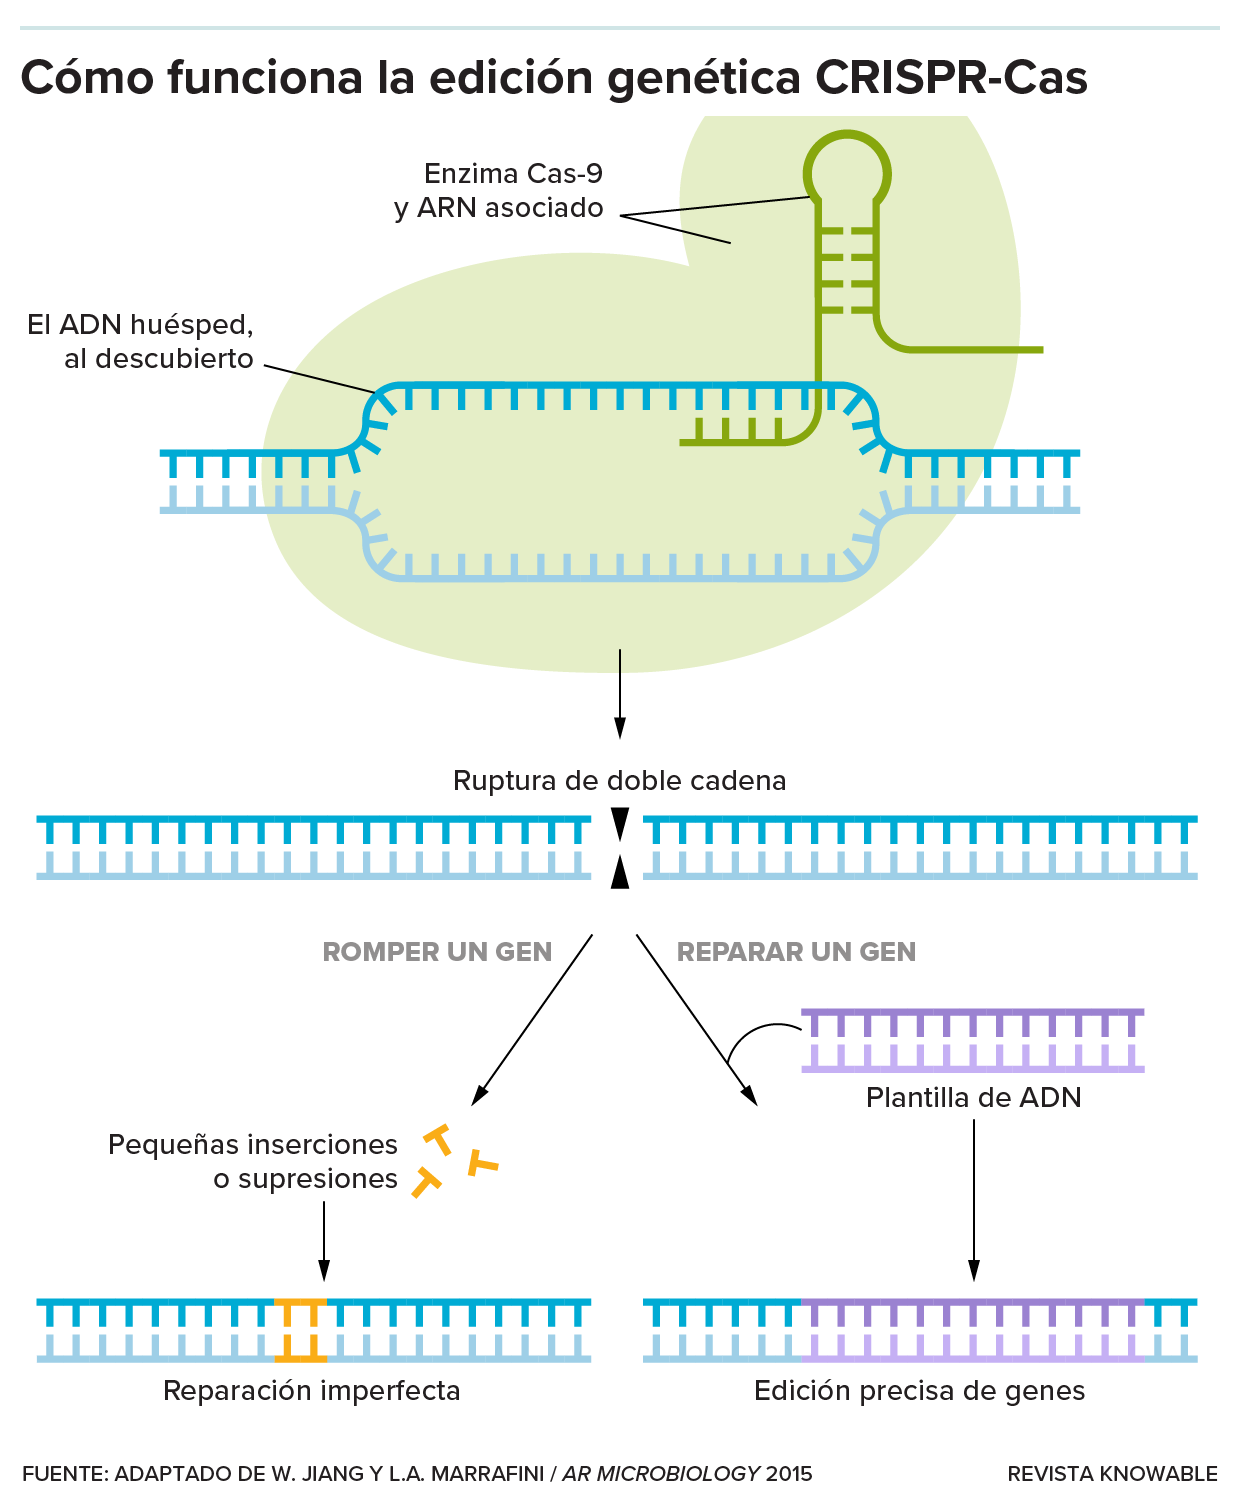 Un diagrama ilustra cómo la enzima Cas9 emplea el ARN para unirse a una sección del genoma de ADN y romperlo, luego de lo cual la célula repara imperfectamente la ruptura o copia nueva información a partir de una plantilla de ADN.